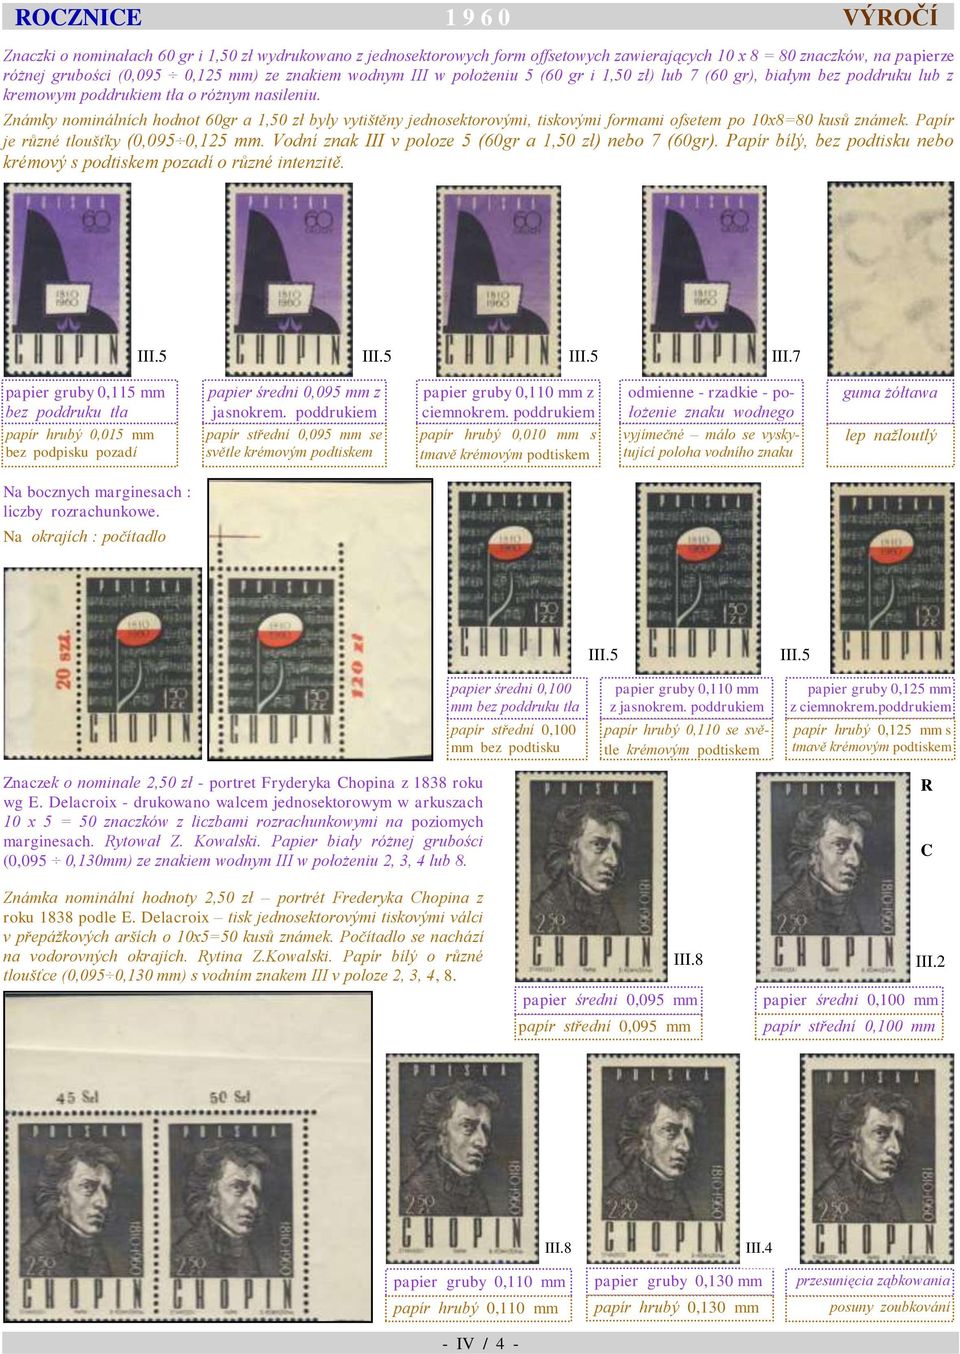 Známky nominálních hodnot 60gr a 1,50 zł byly vytištěny jednosektorovými, tiskovými formami ofsetem po 10x8=80 kusů známek. Papír je různé tloušťky (0,095 0,125 mm.